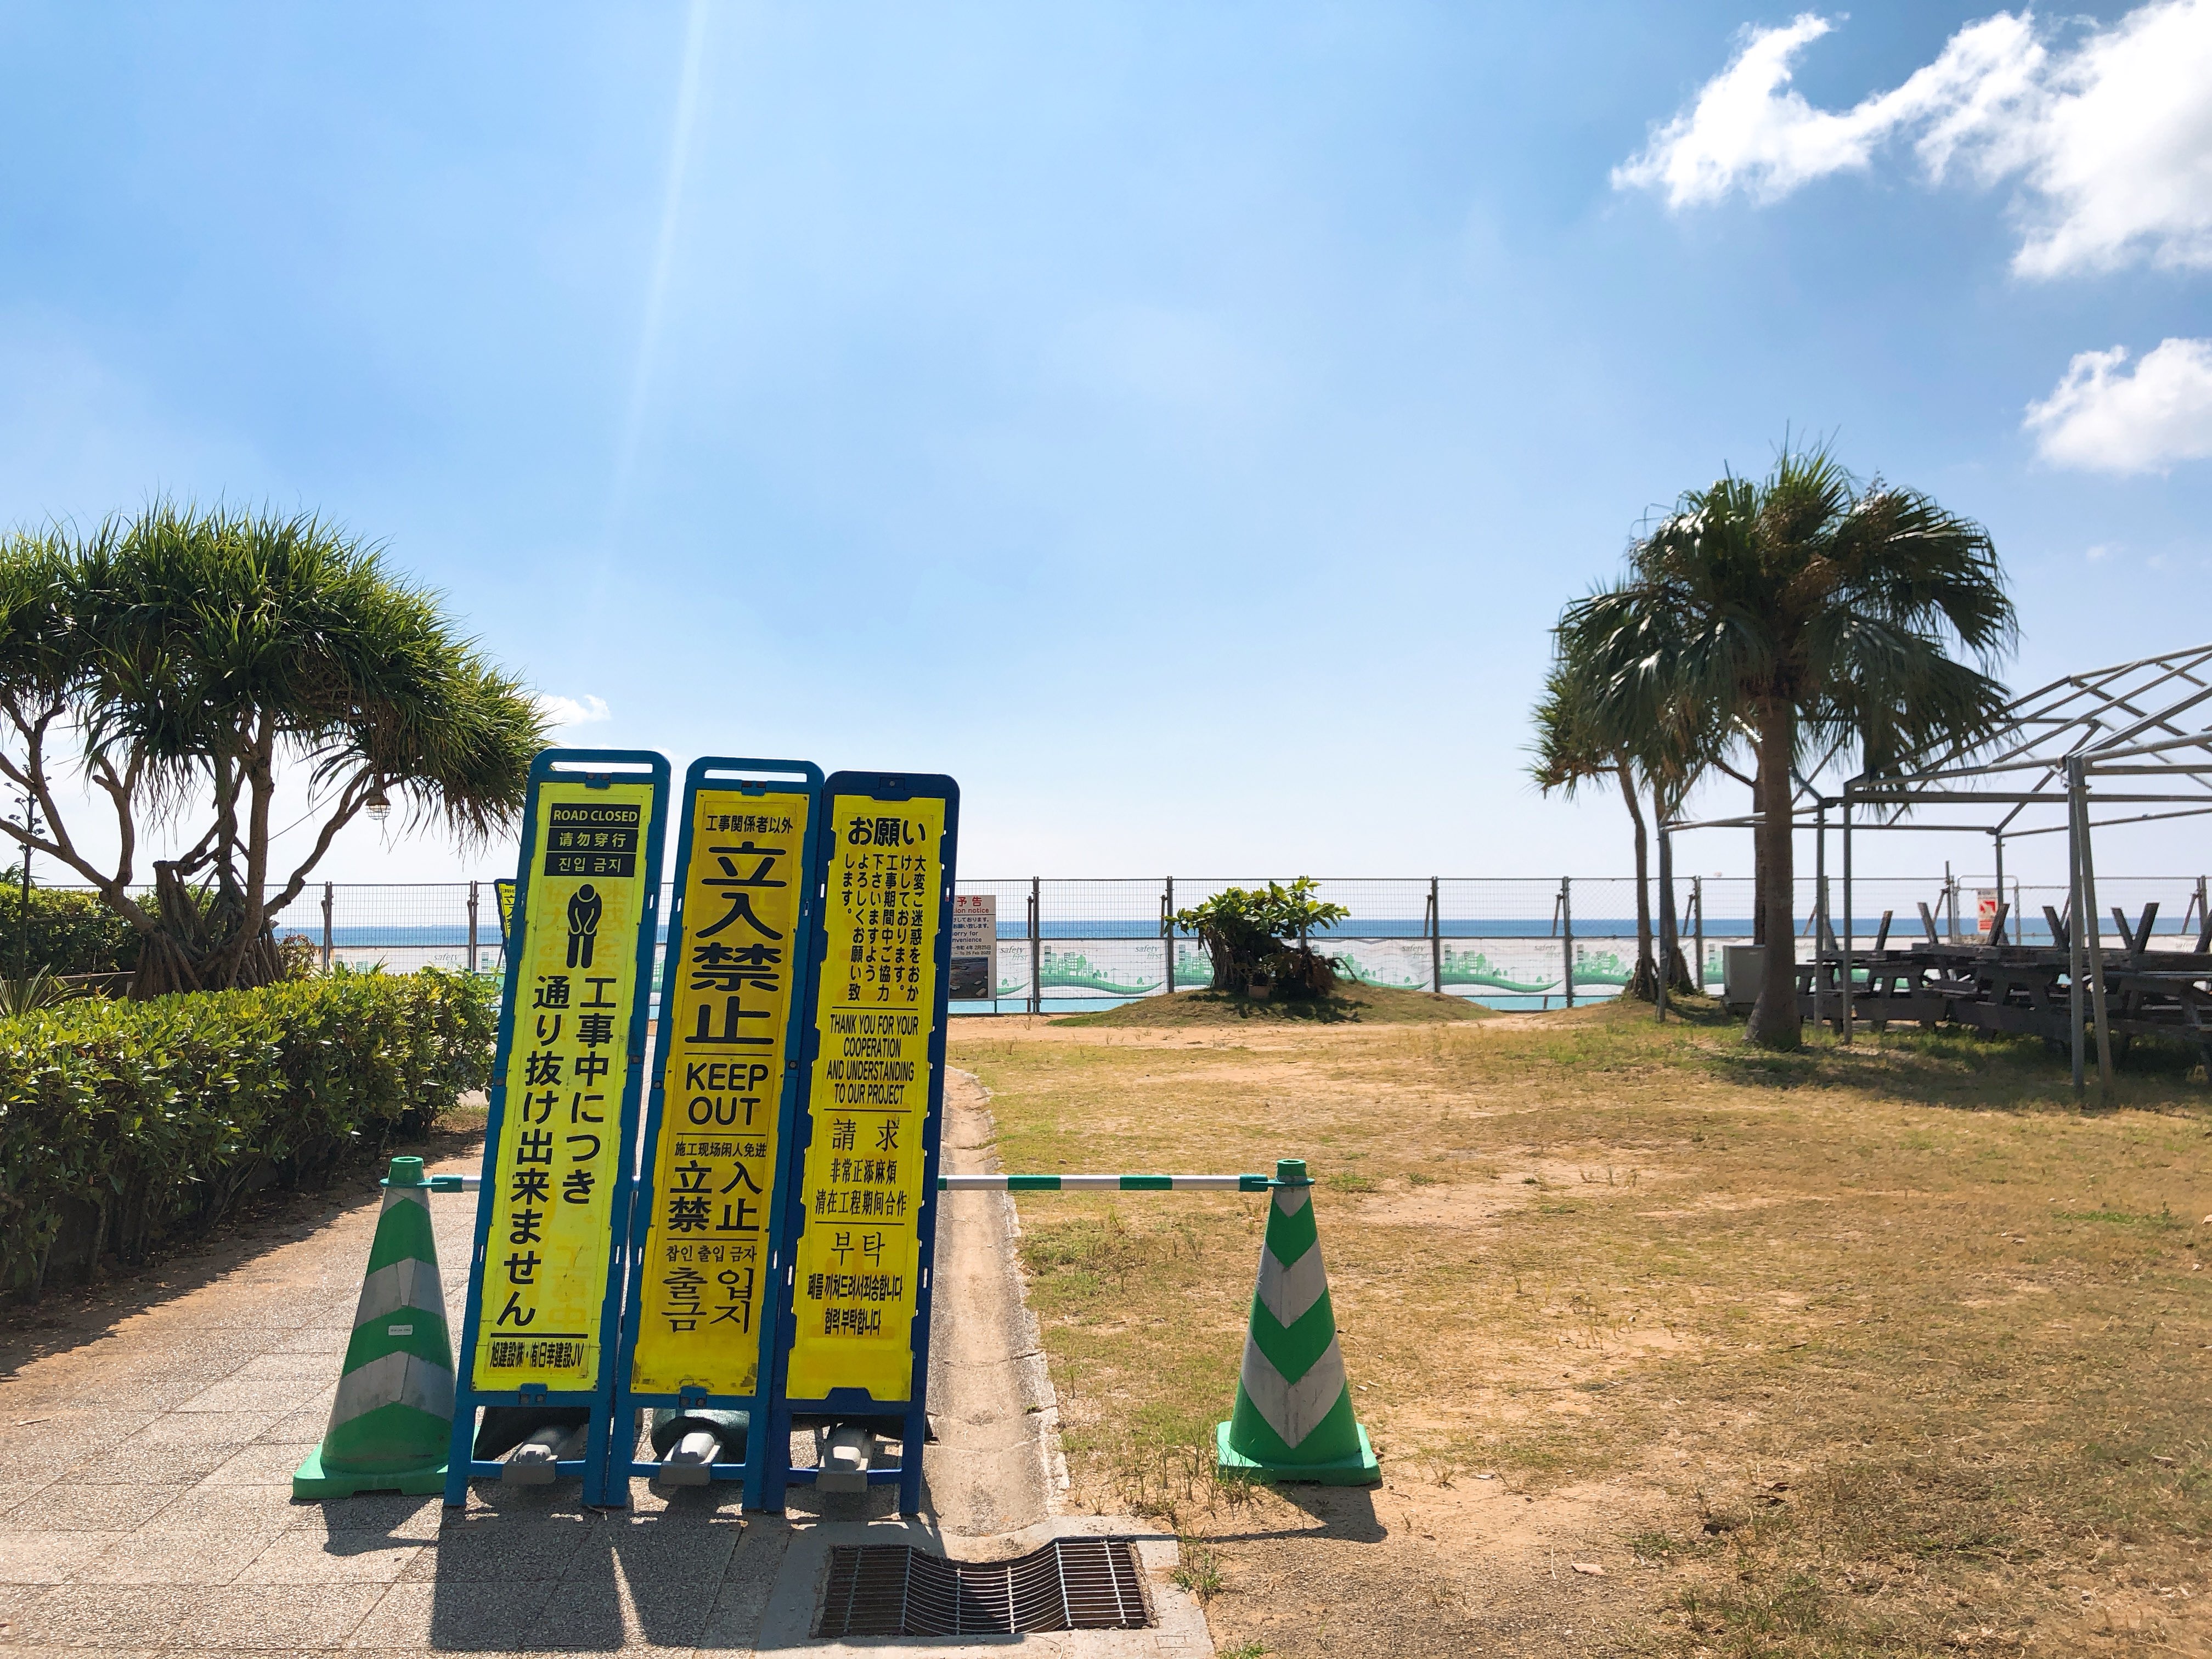 北谷町美浜のサンセットビーチの現在の様子を見て来ました 美ら浜つーしん 沖縄県北谷町の地域情報サイト